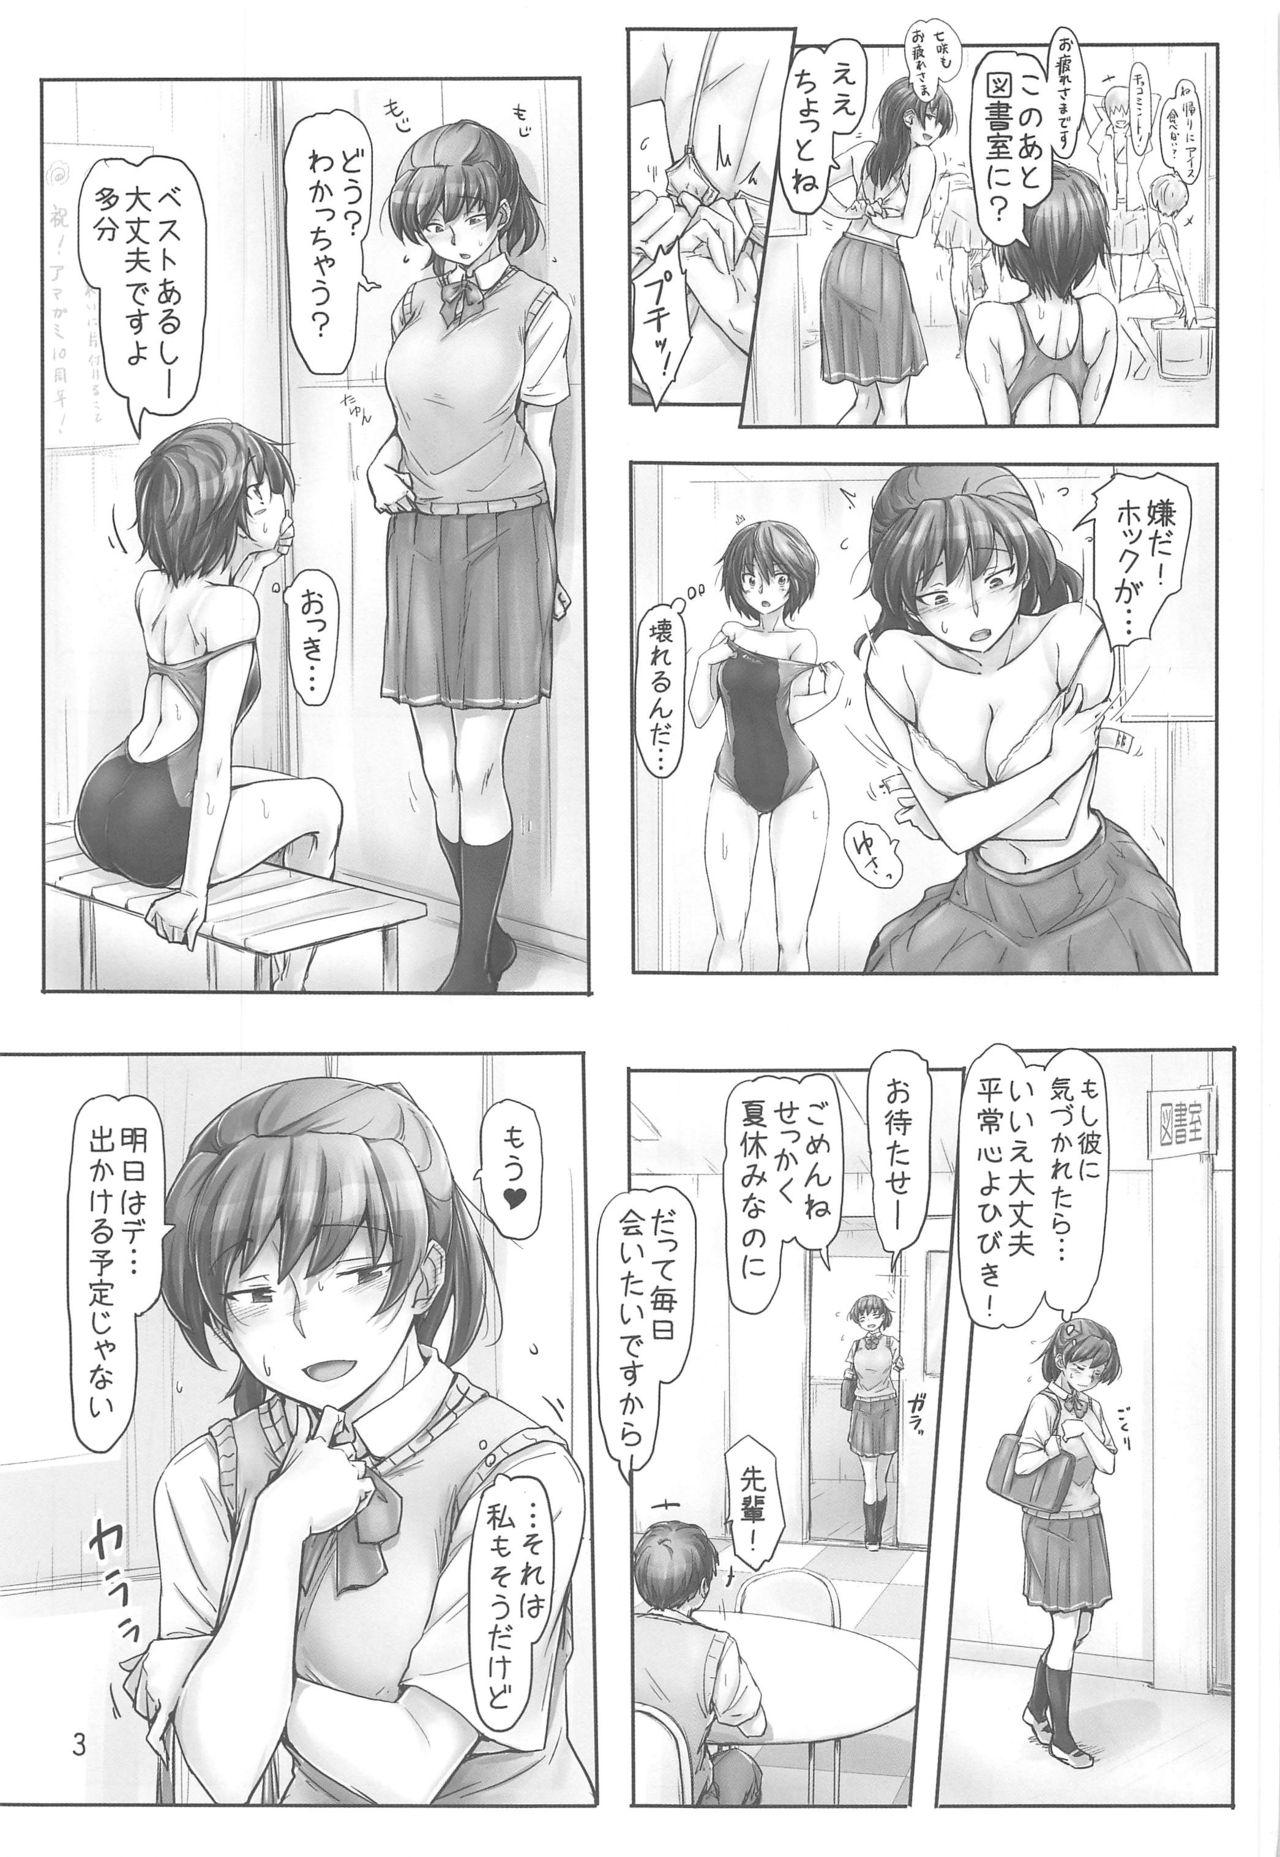 Tit Shinpai Shita Kare ga Ie made Okutte Kurete Ureshikatta kara Date de Chotto Daitan na Hibiki-san - Amagami Follada - Page 2